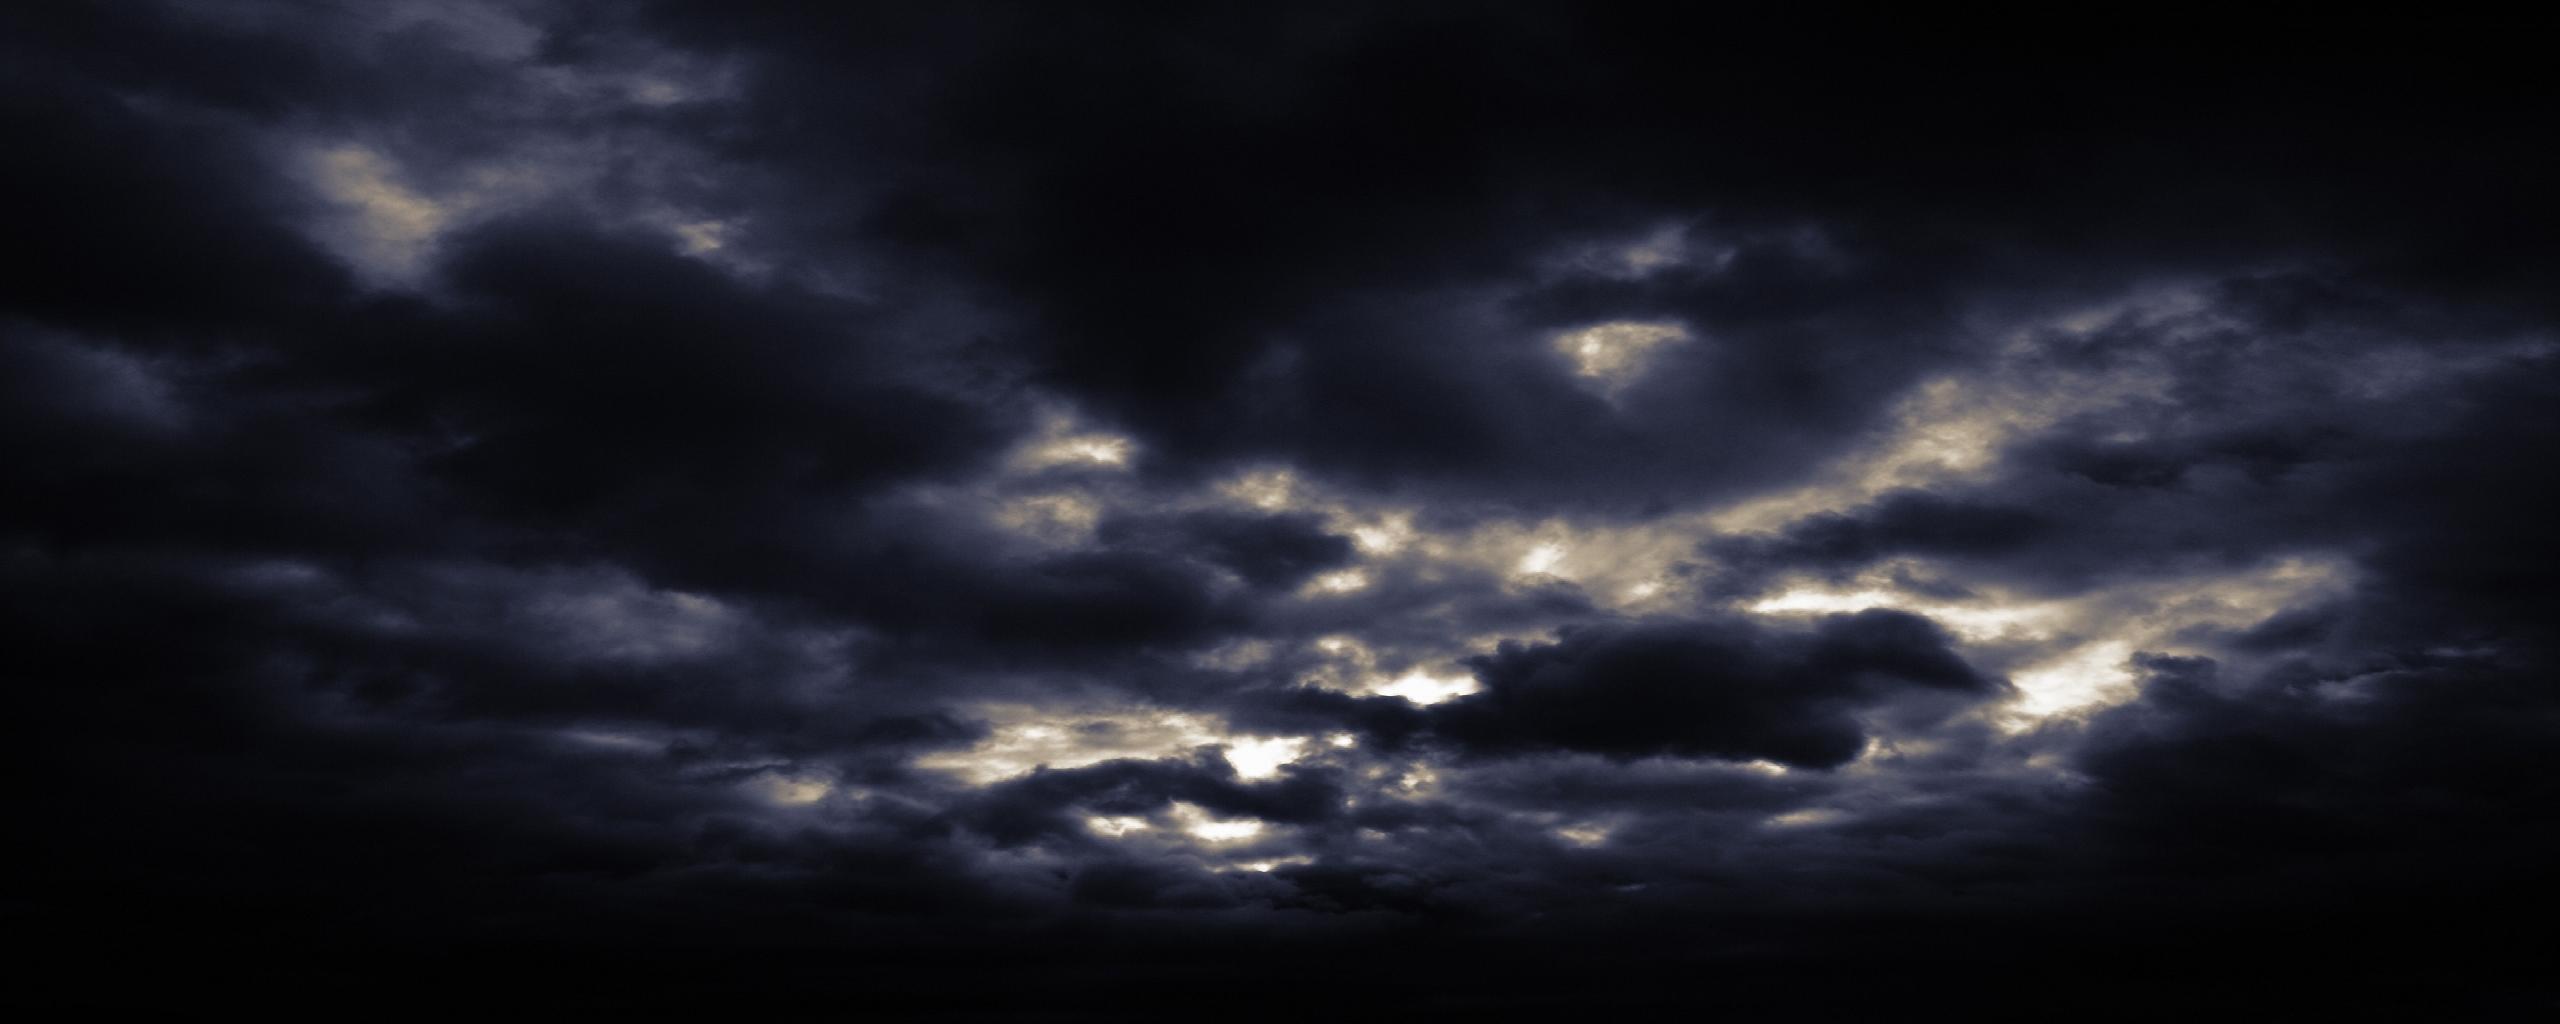 Top Dark Sky Wallpaper - Dark Sky Background - 2560x1024 Wallpaper -  